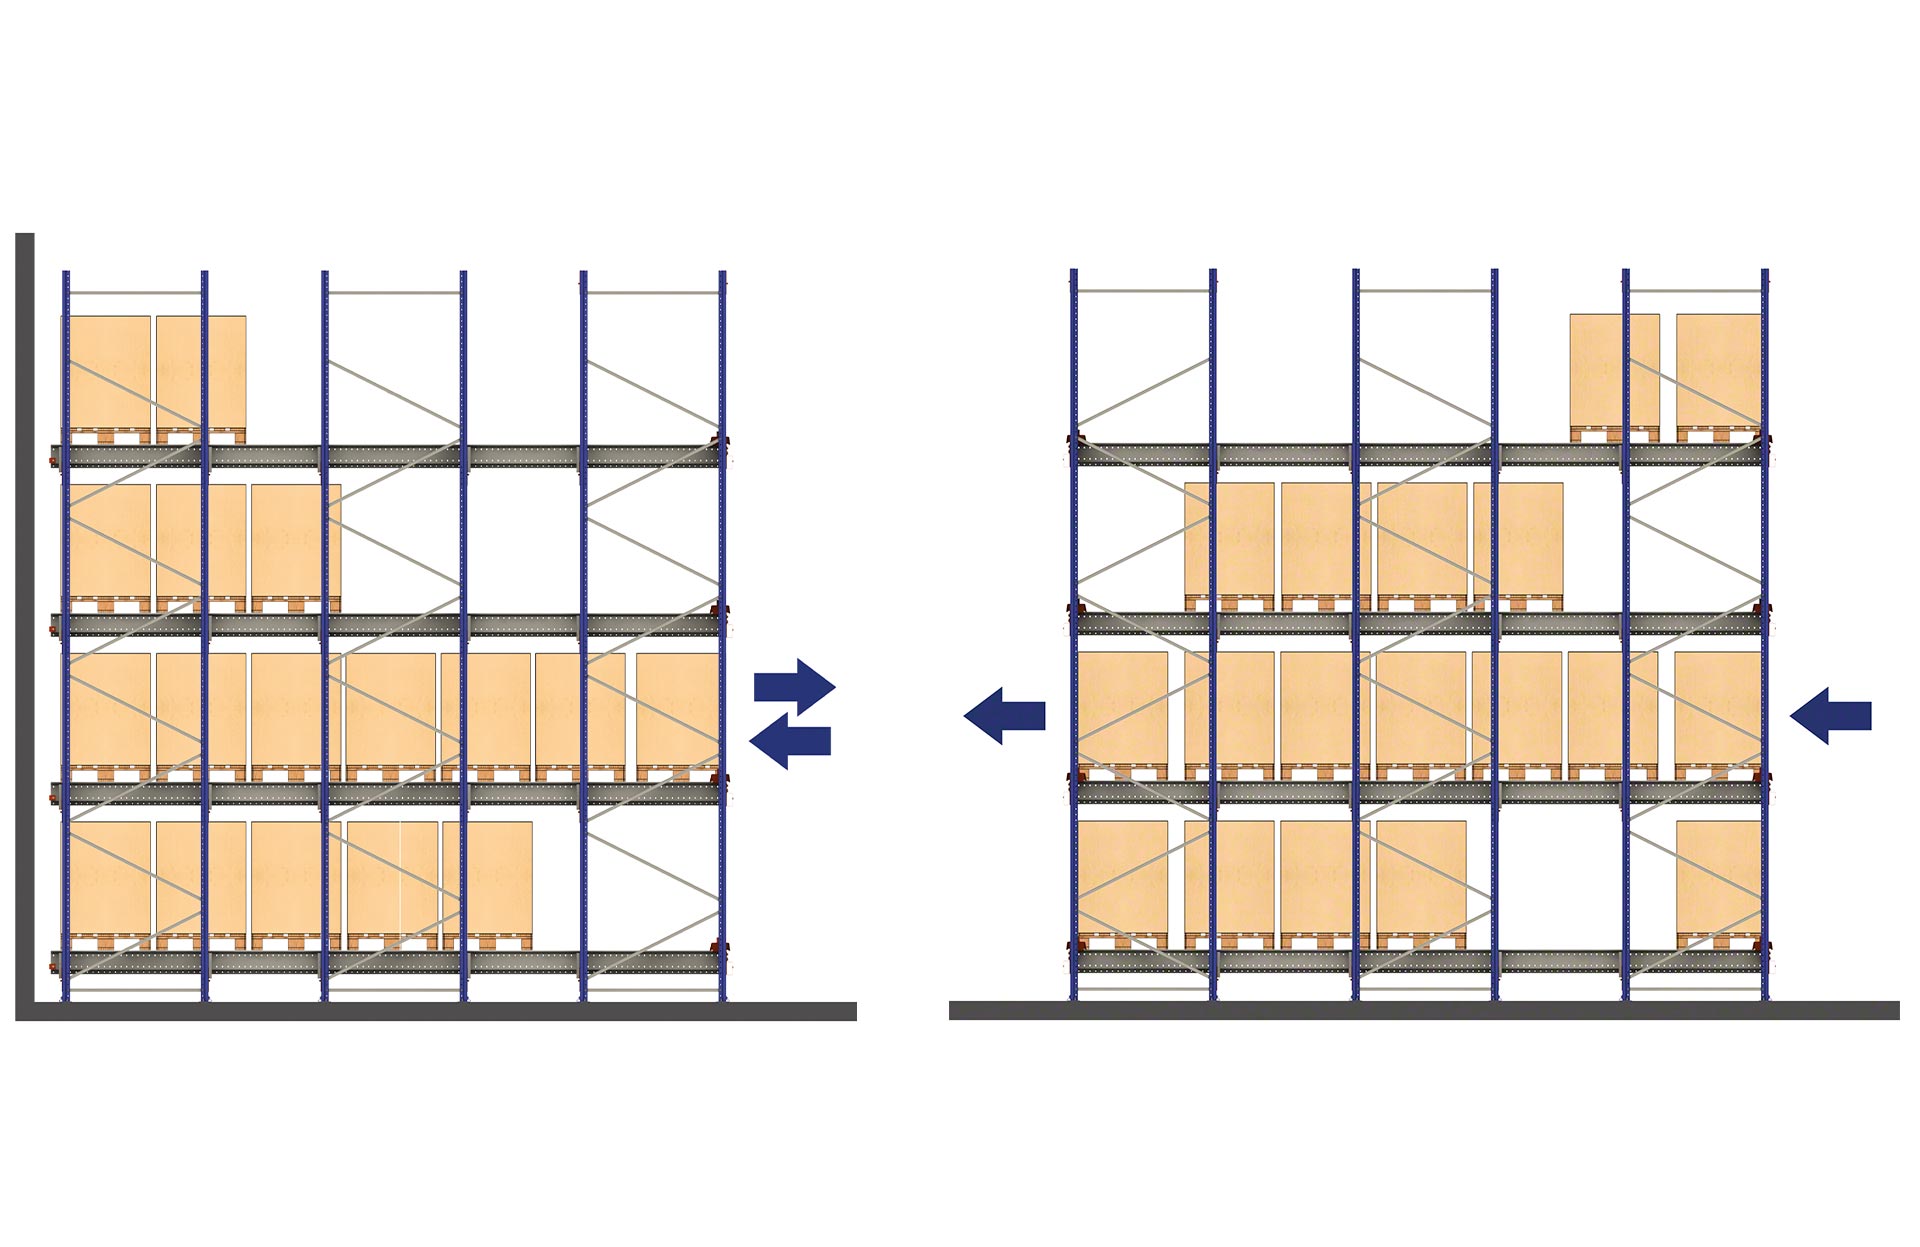 Bij de LIFO-opstelling gaan de pallets langs één kant naar binnen en naar buiten, bij de FIFO-opstelling gebeurt de in- en uitslag vanuit verschillende gangen